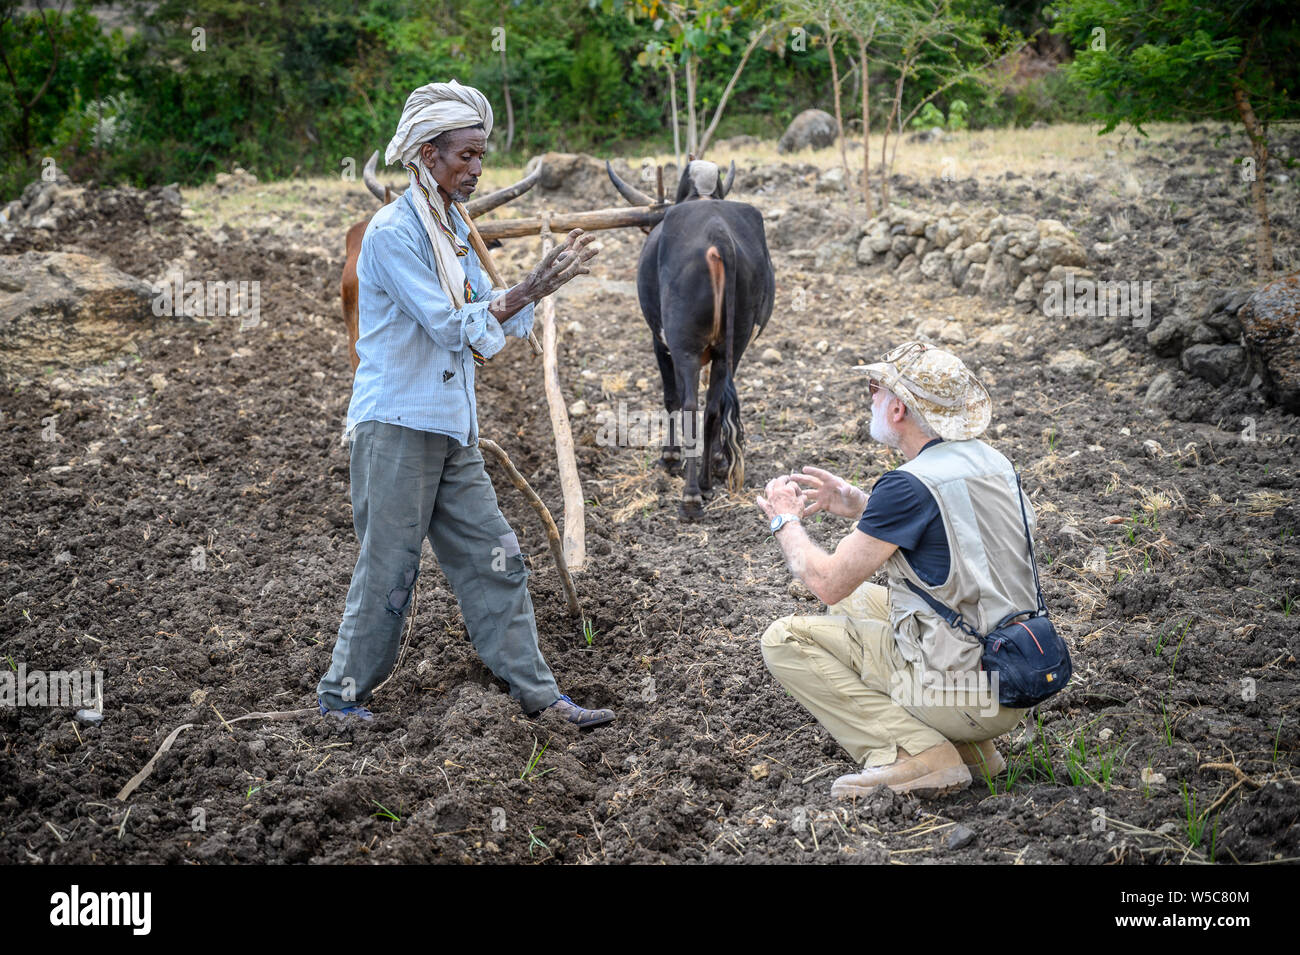 Un agriculteur Ethiopien traite de l'agriculture avec un Américain, le professeur Debre Berhan, Éthiopie. Banque D'Images